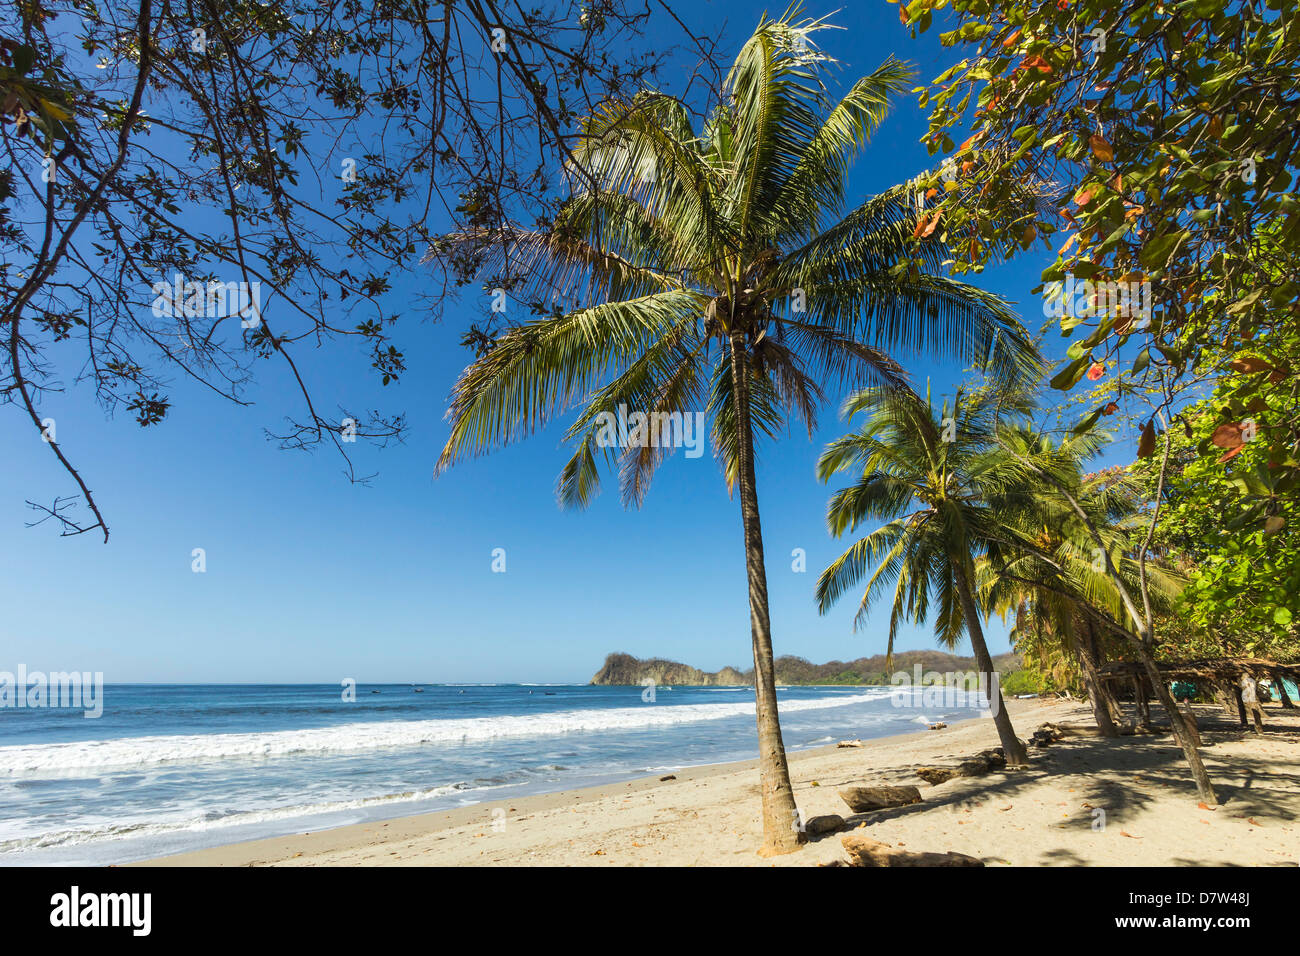 Le sable blanc de la plage bordée de palmiers à laid-back et village resort, Samara, Péninsule de Nicoya, Province de Guanacaste, Costa Rica Banque D'Images